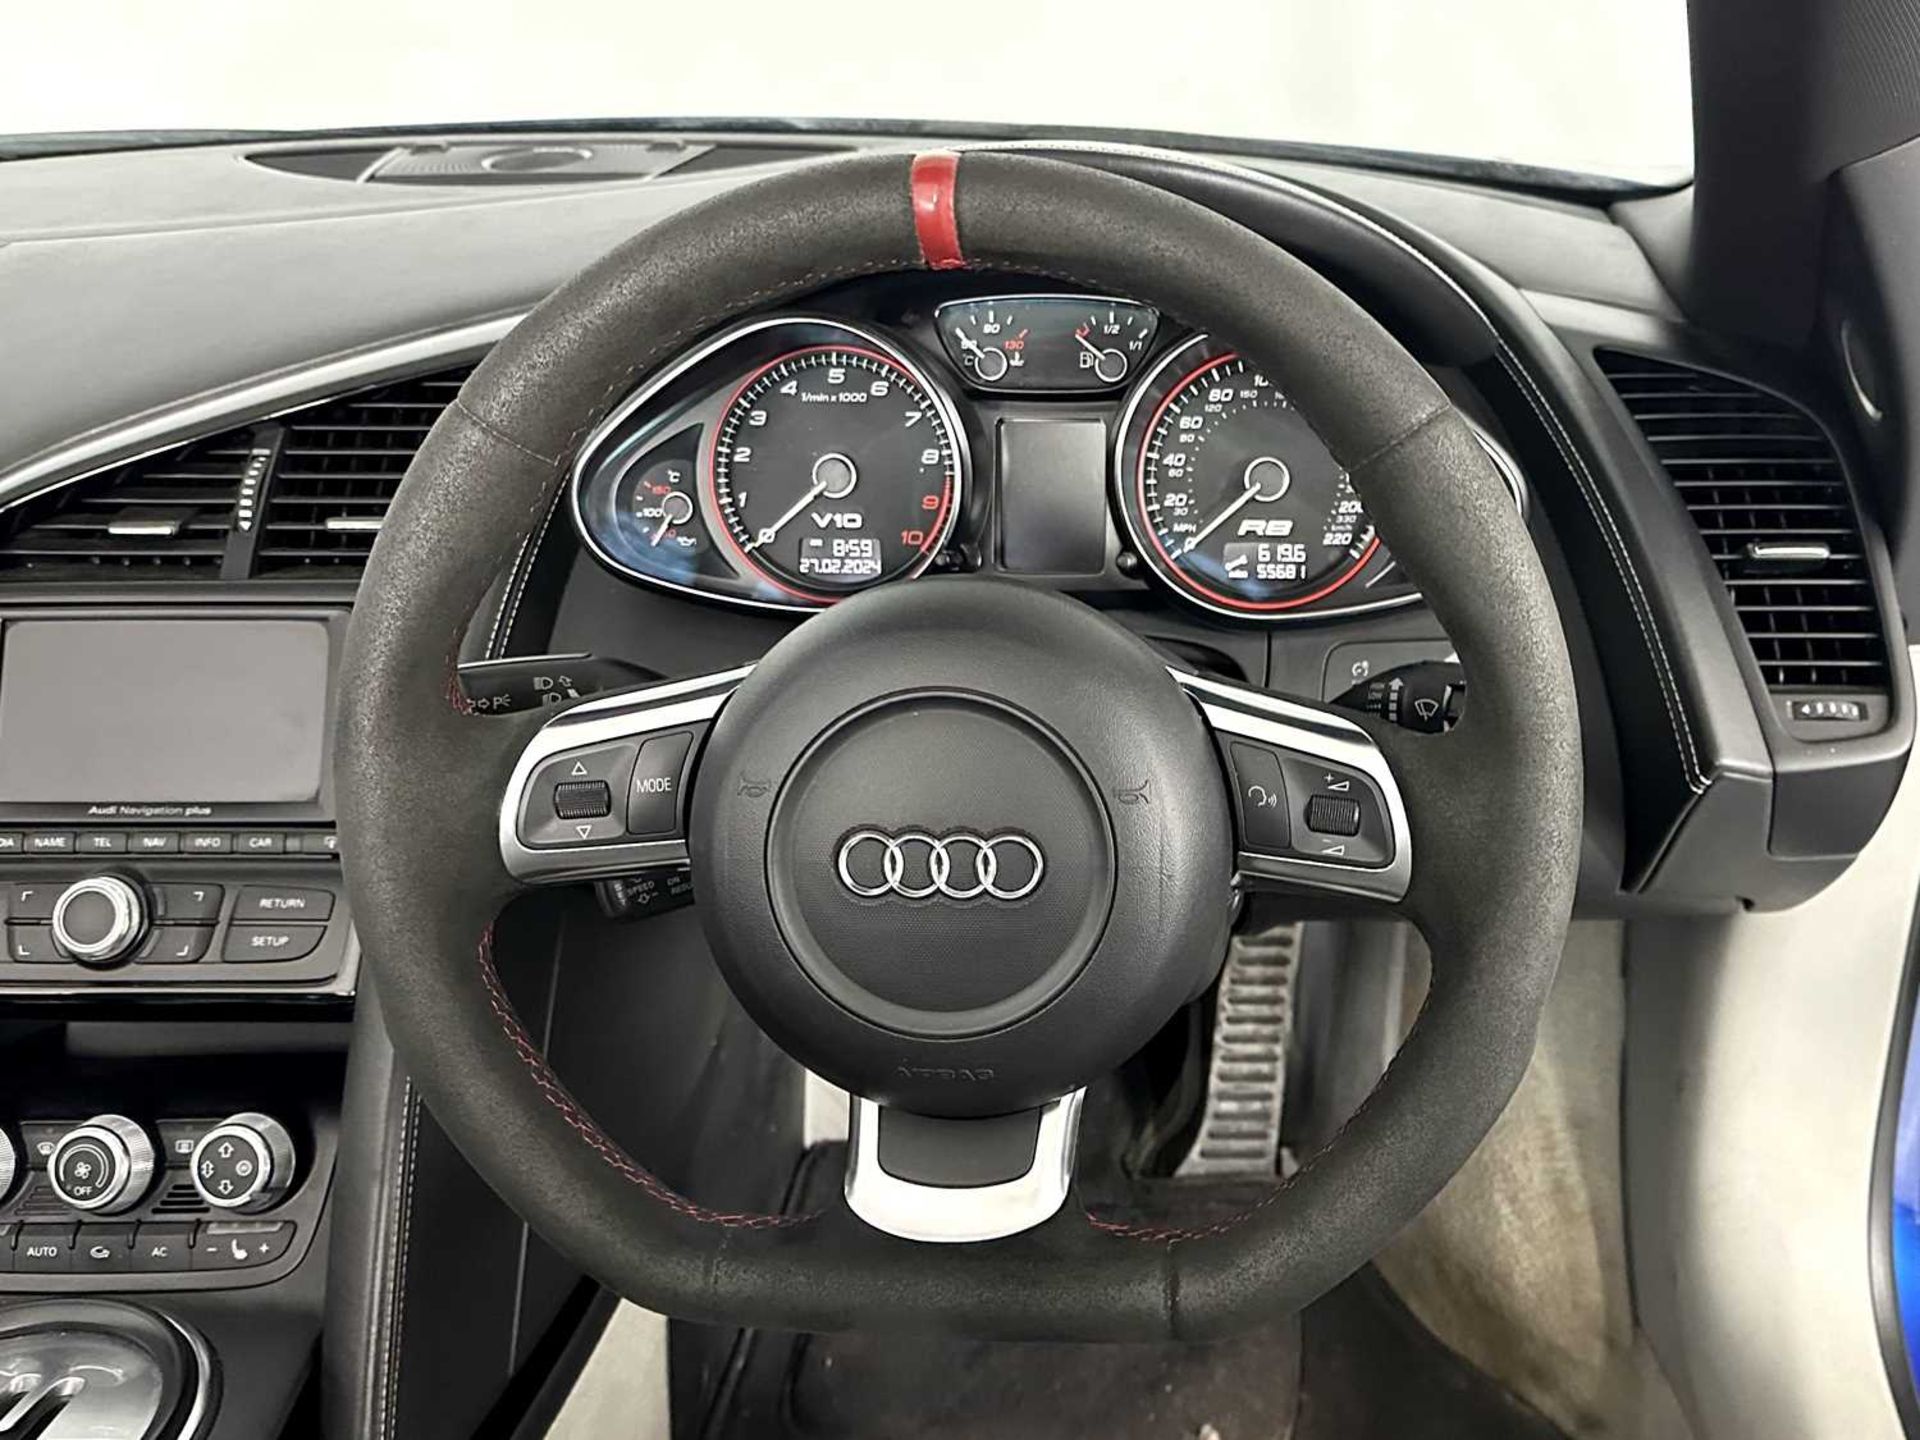 2010 Audi R8 Spyder - Image 20 of 33